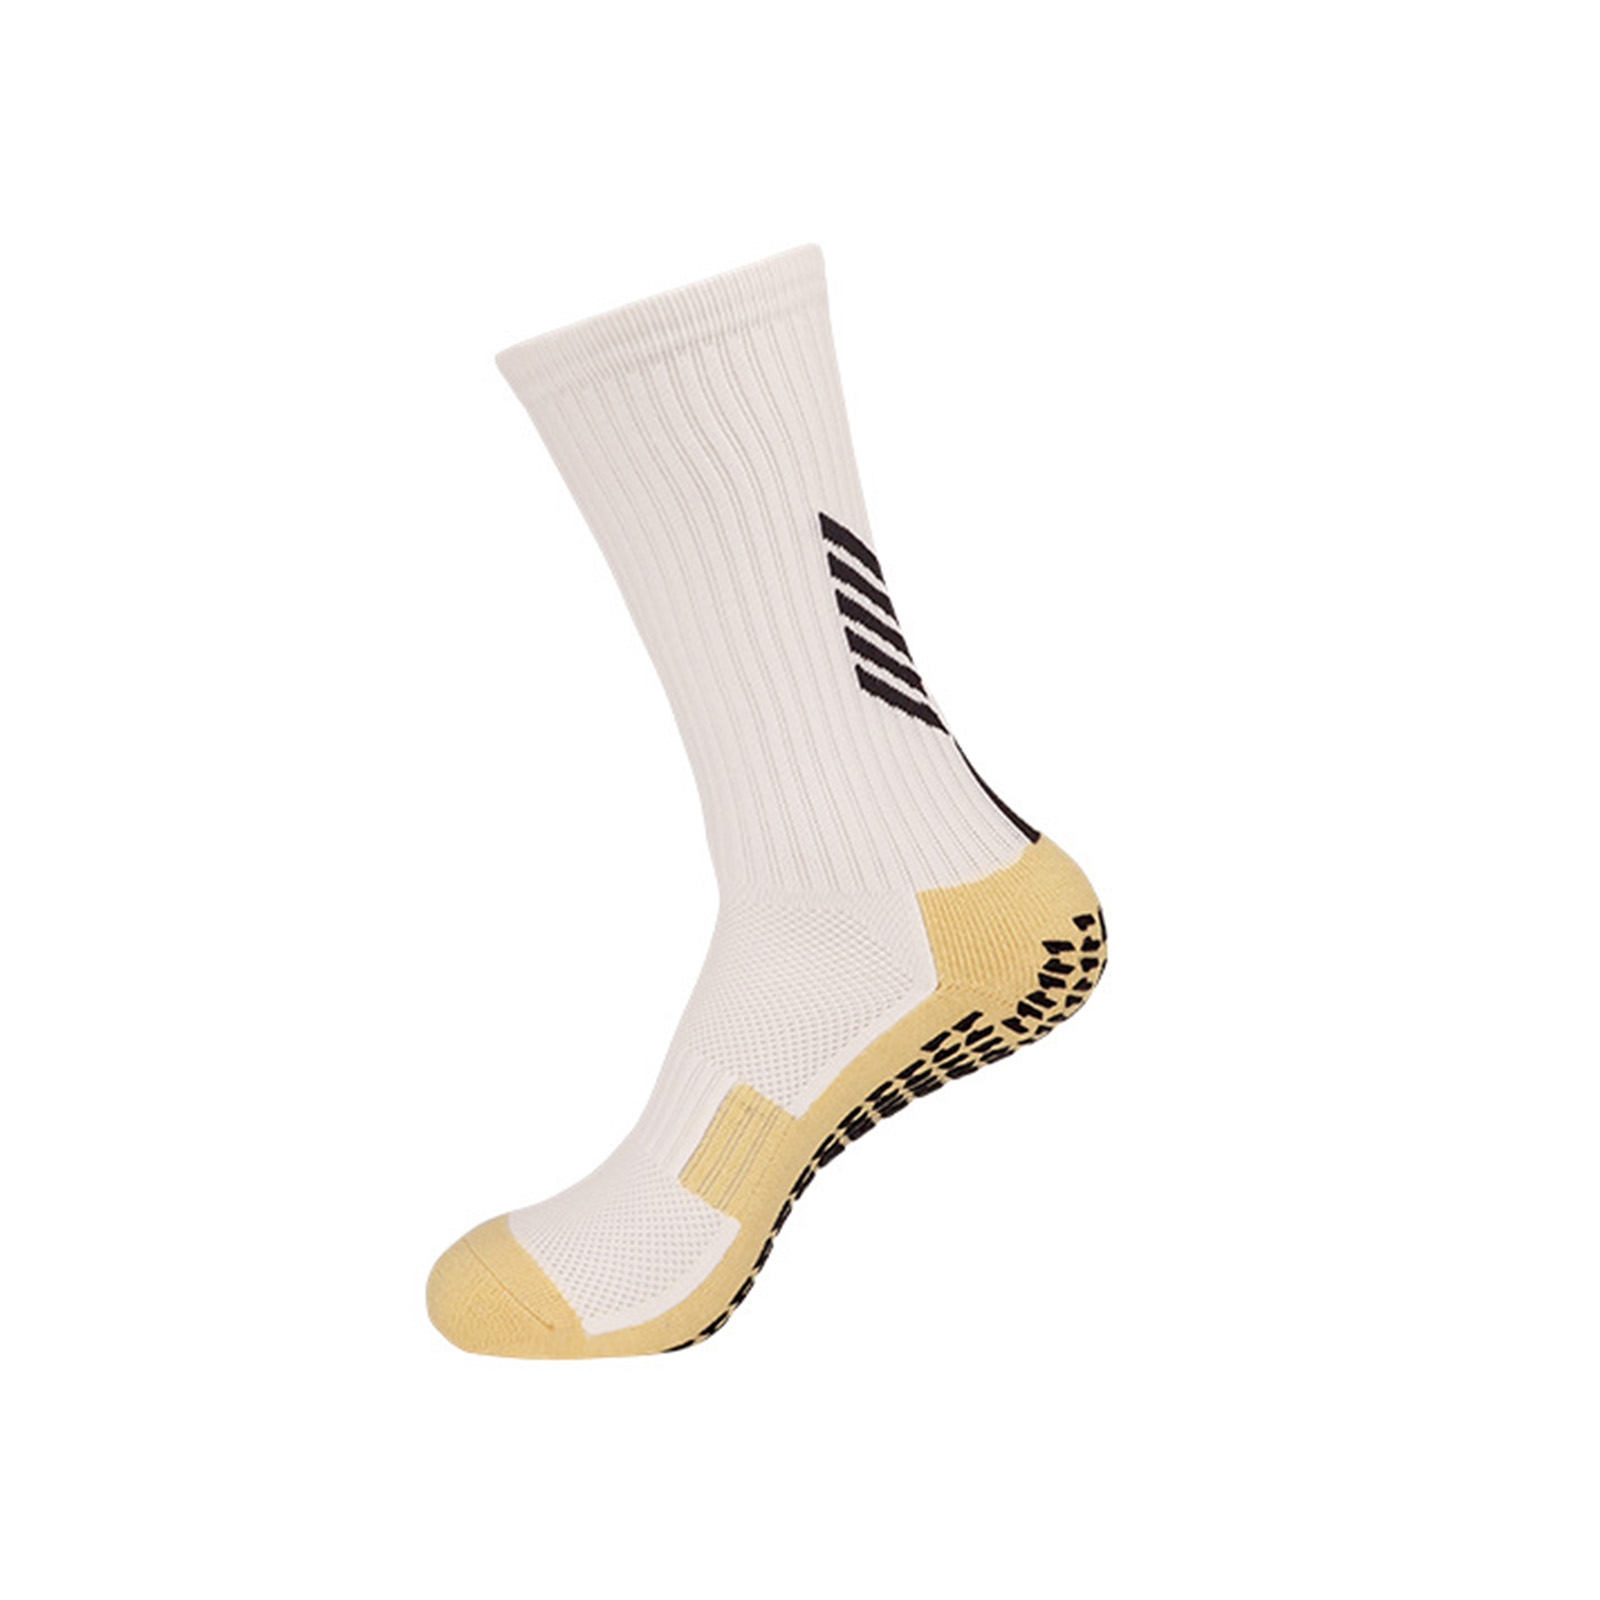 Football Grip Socks - Socks - AliExpress